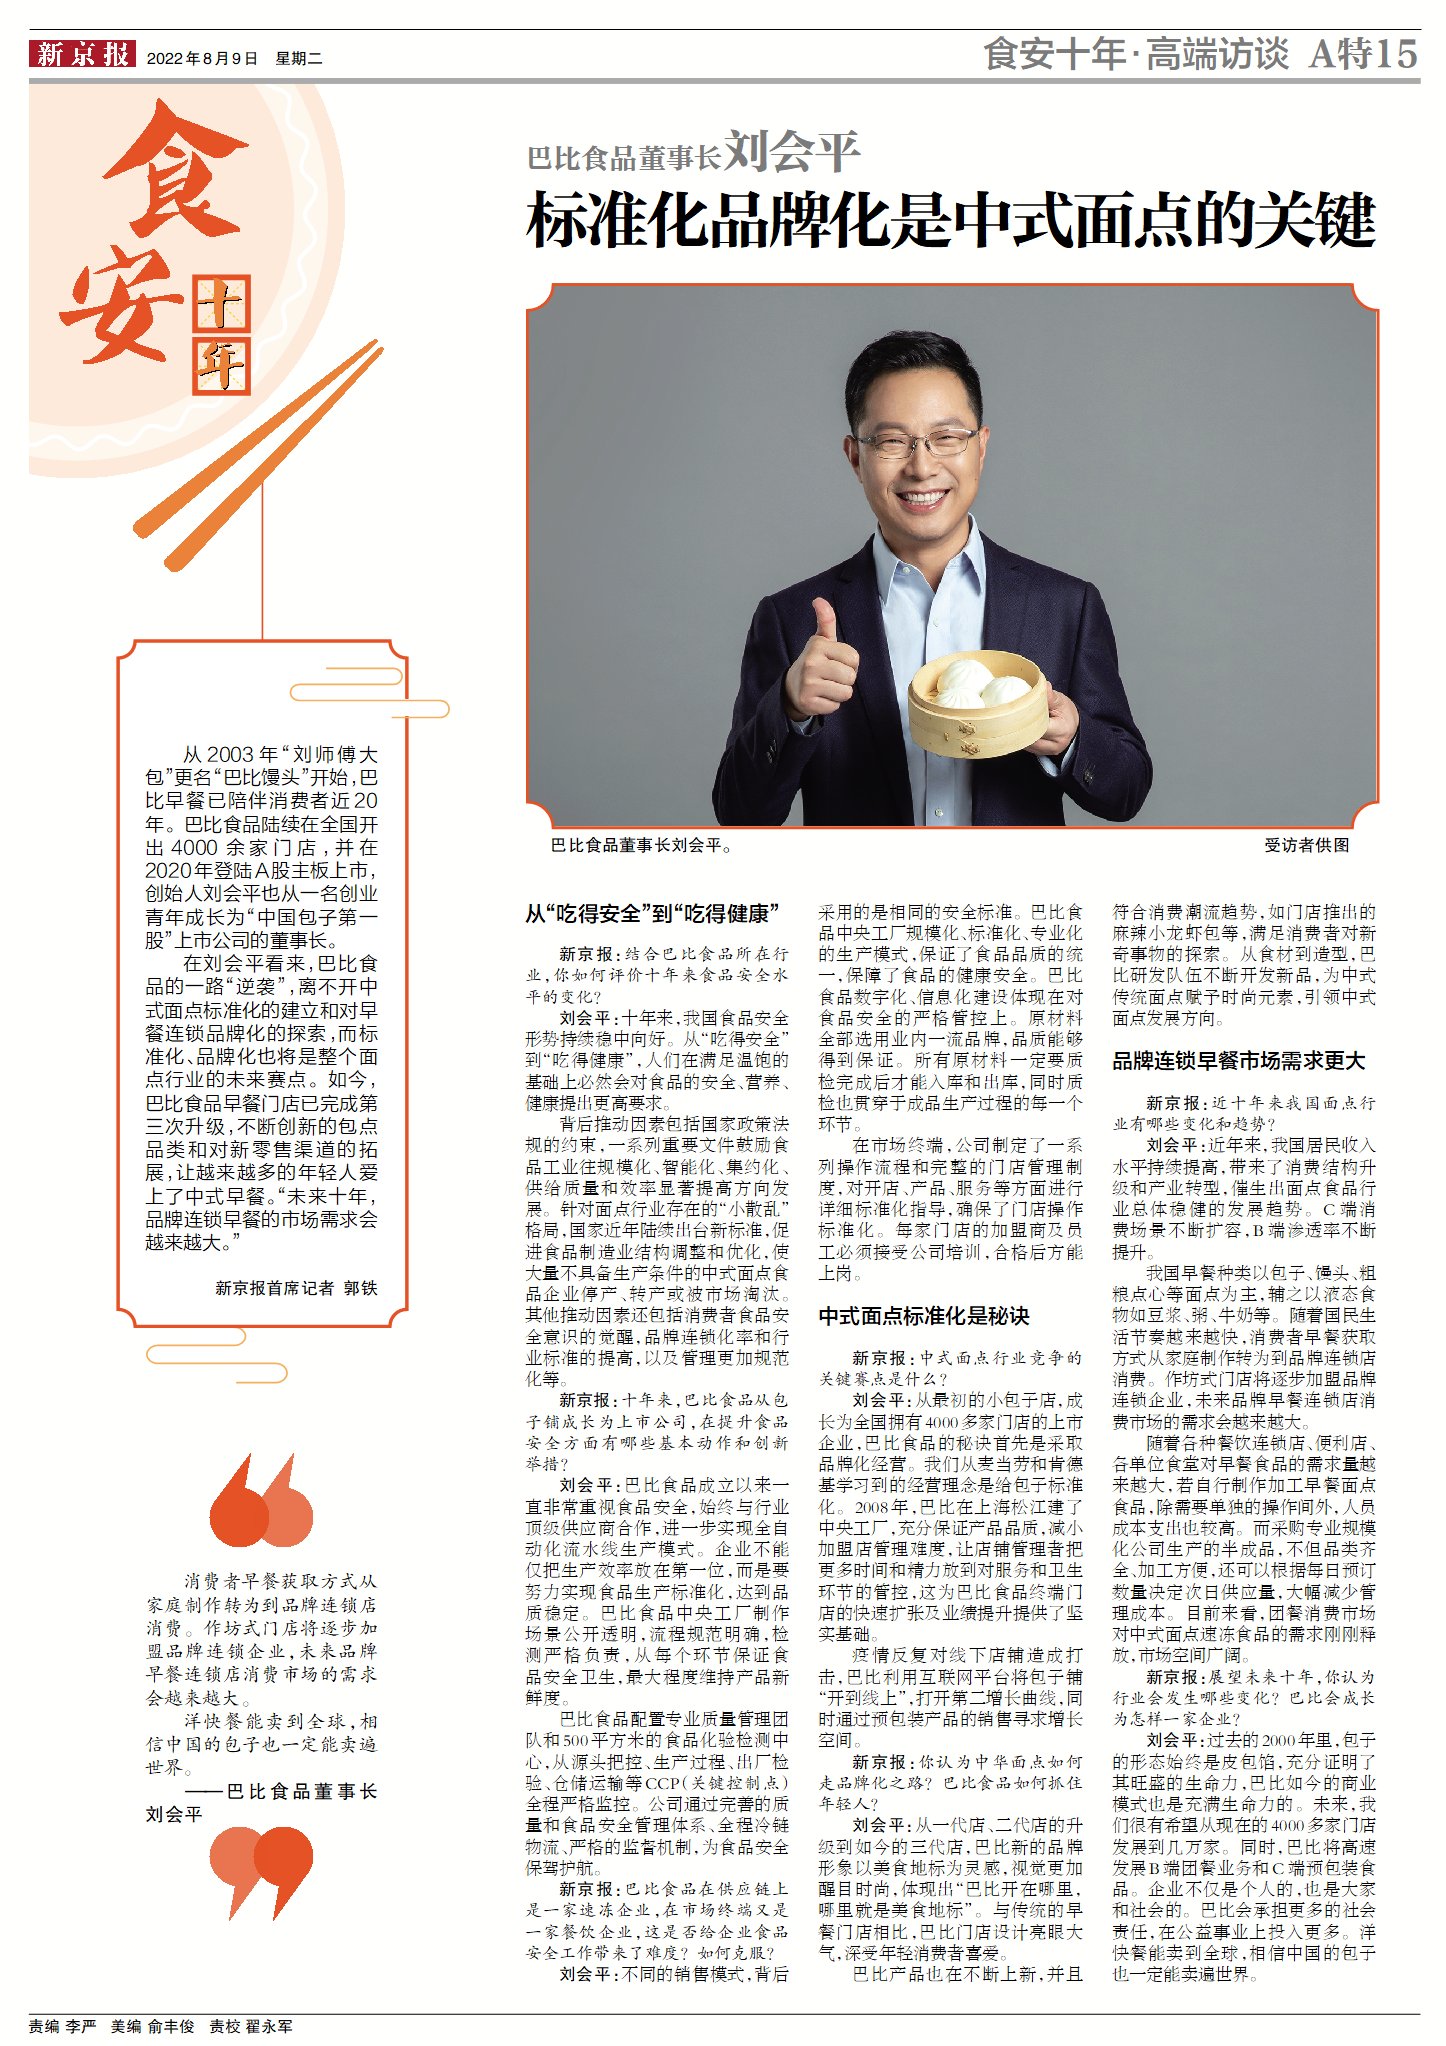 2022新京报食品安全特刊-专访巴比食品董事长刘会平